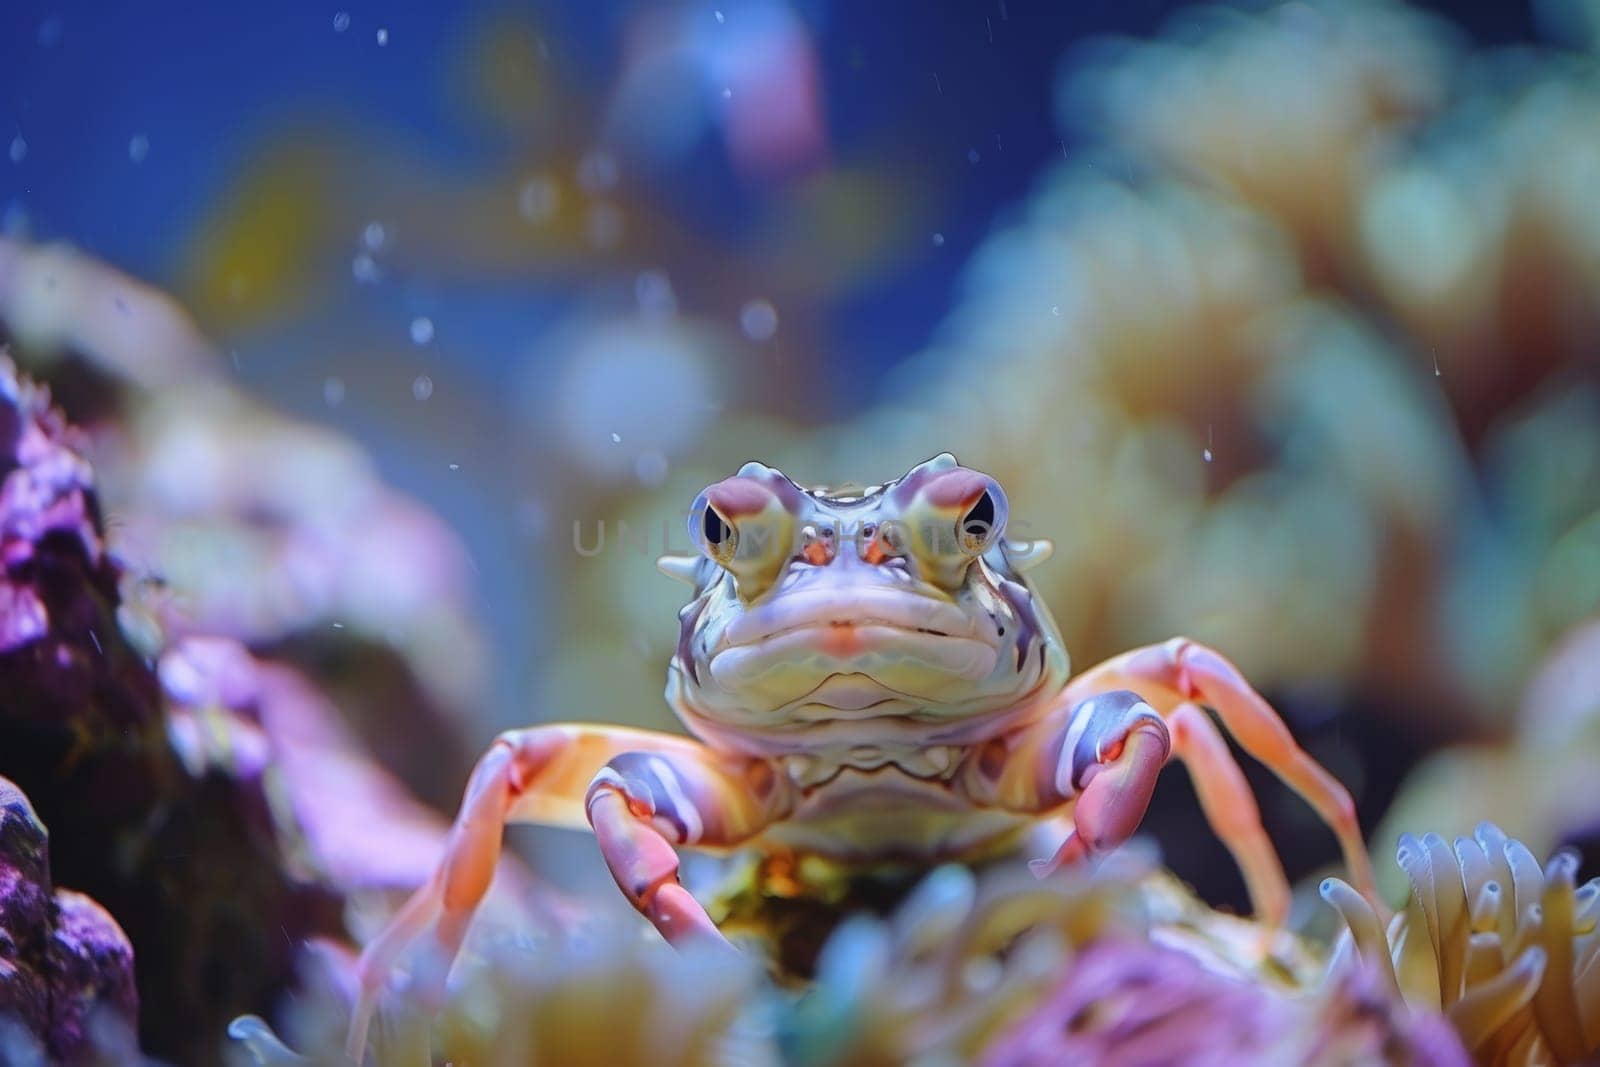 Captivating images of marine life, marine life ecosystem, Underwater image background.